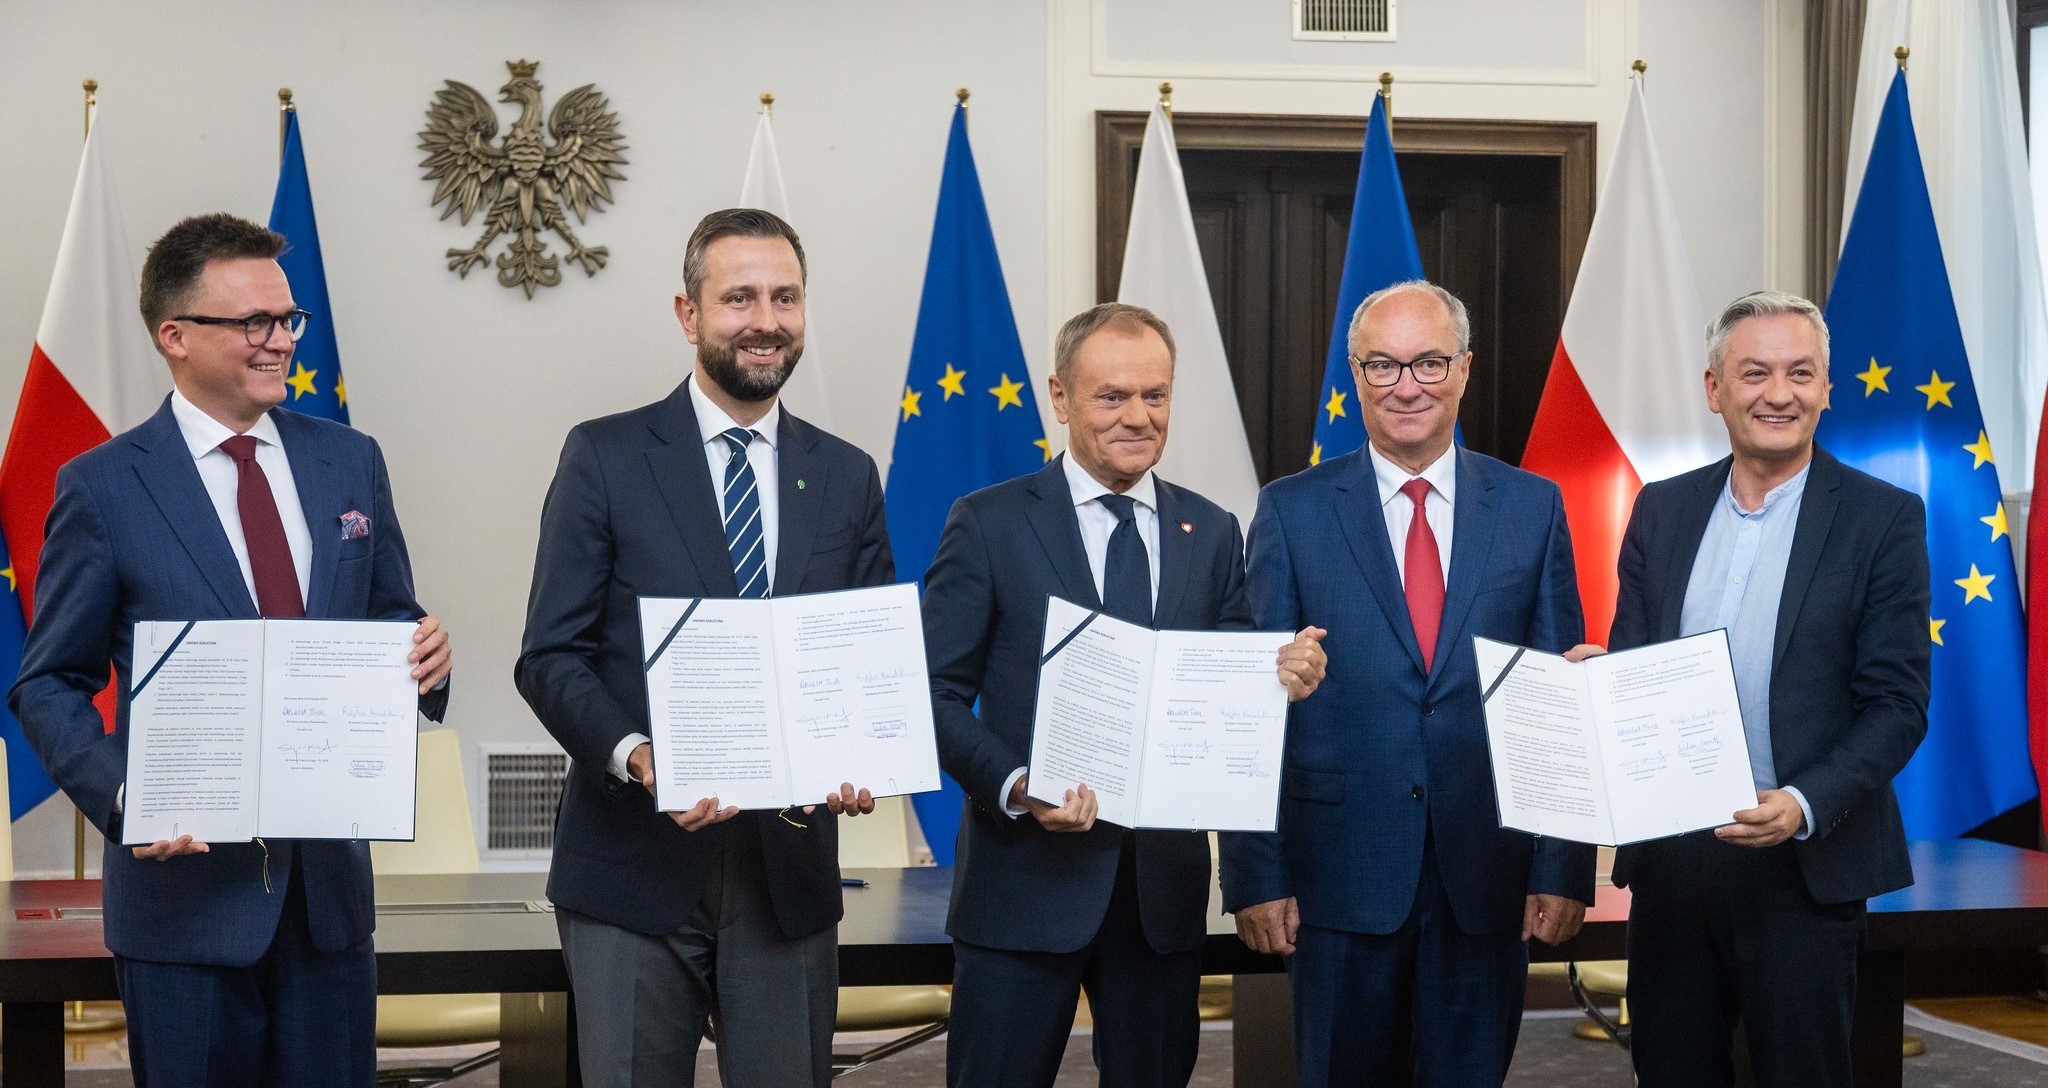 Polskie ugrupowania opozycyjne podpisują porozumienie określające program przyszłego rządu koalicyjnego